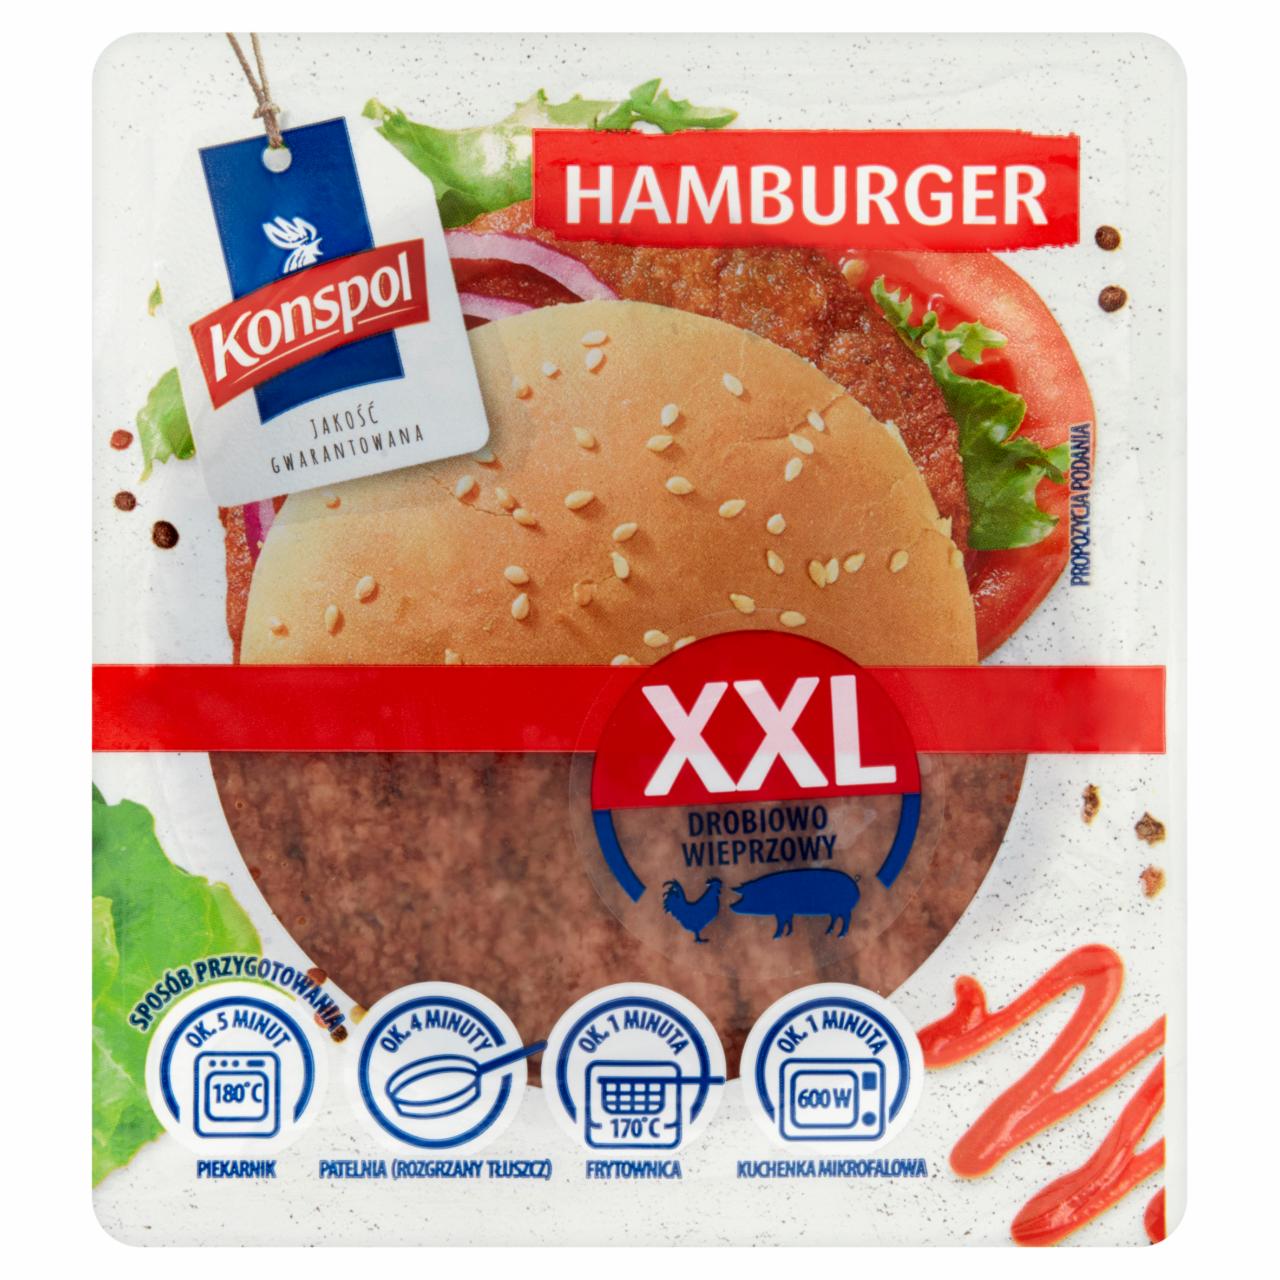 Zdjęcia - Konspol Hamburger XXL drobiowo-wieprzowy 270 g